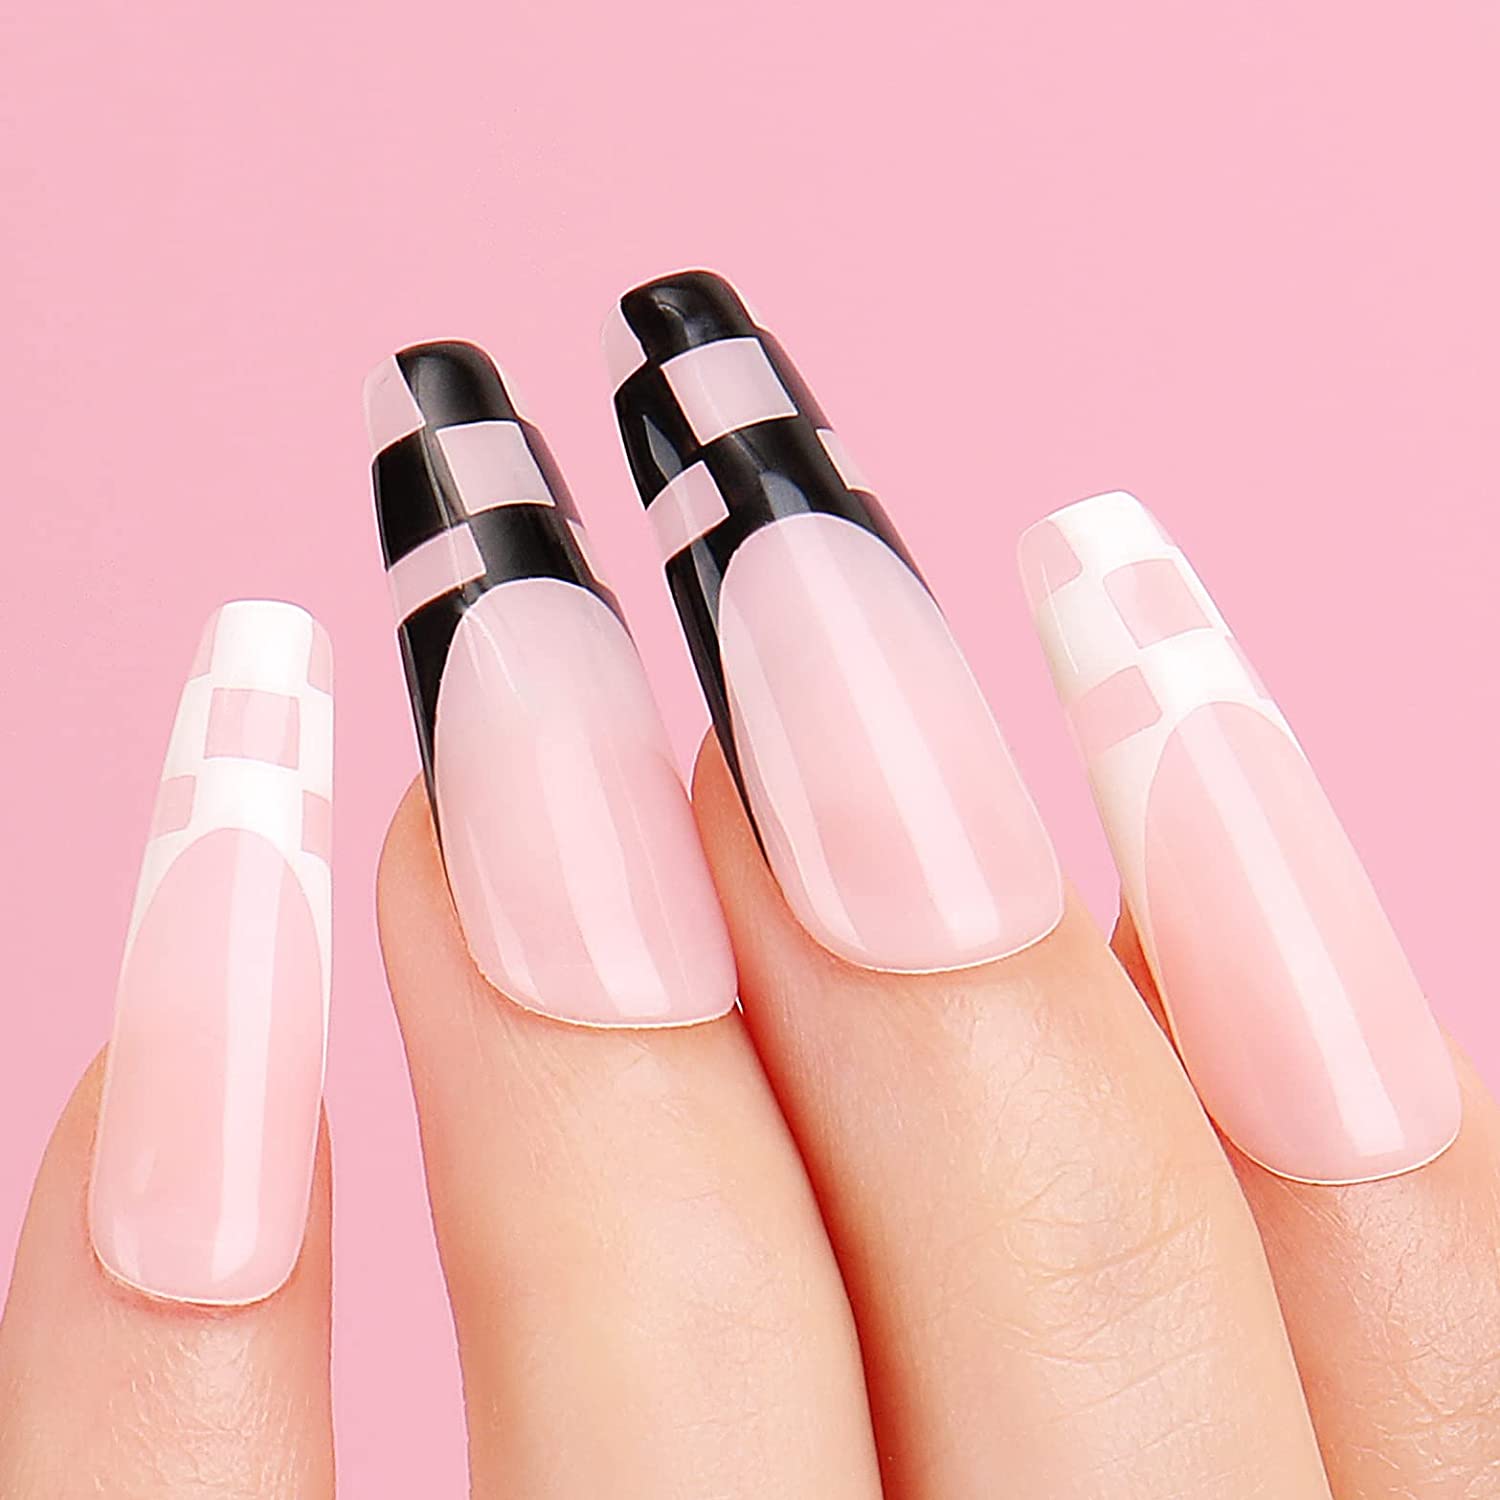 pink valentine nails